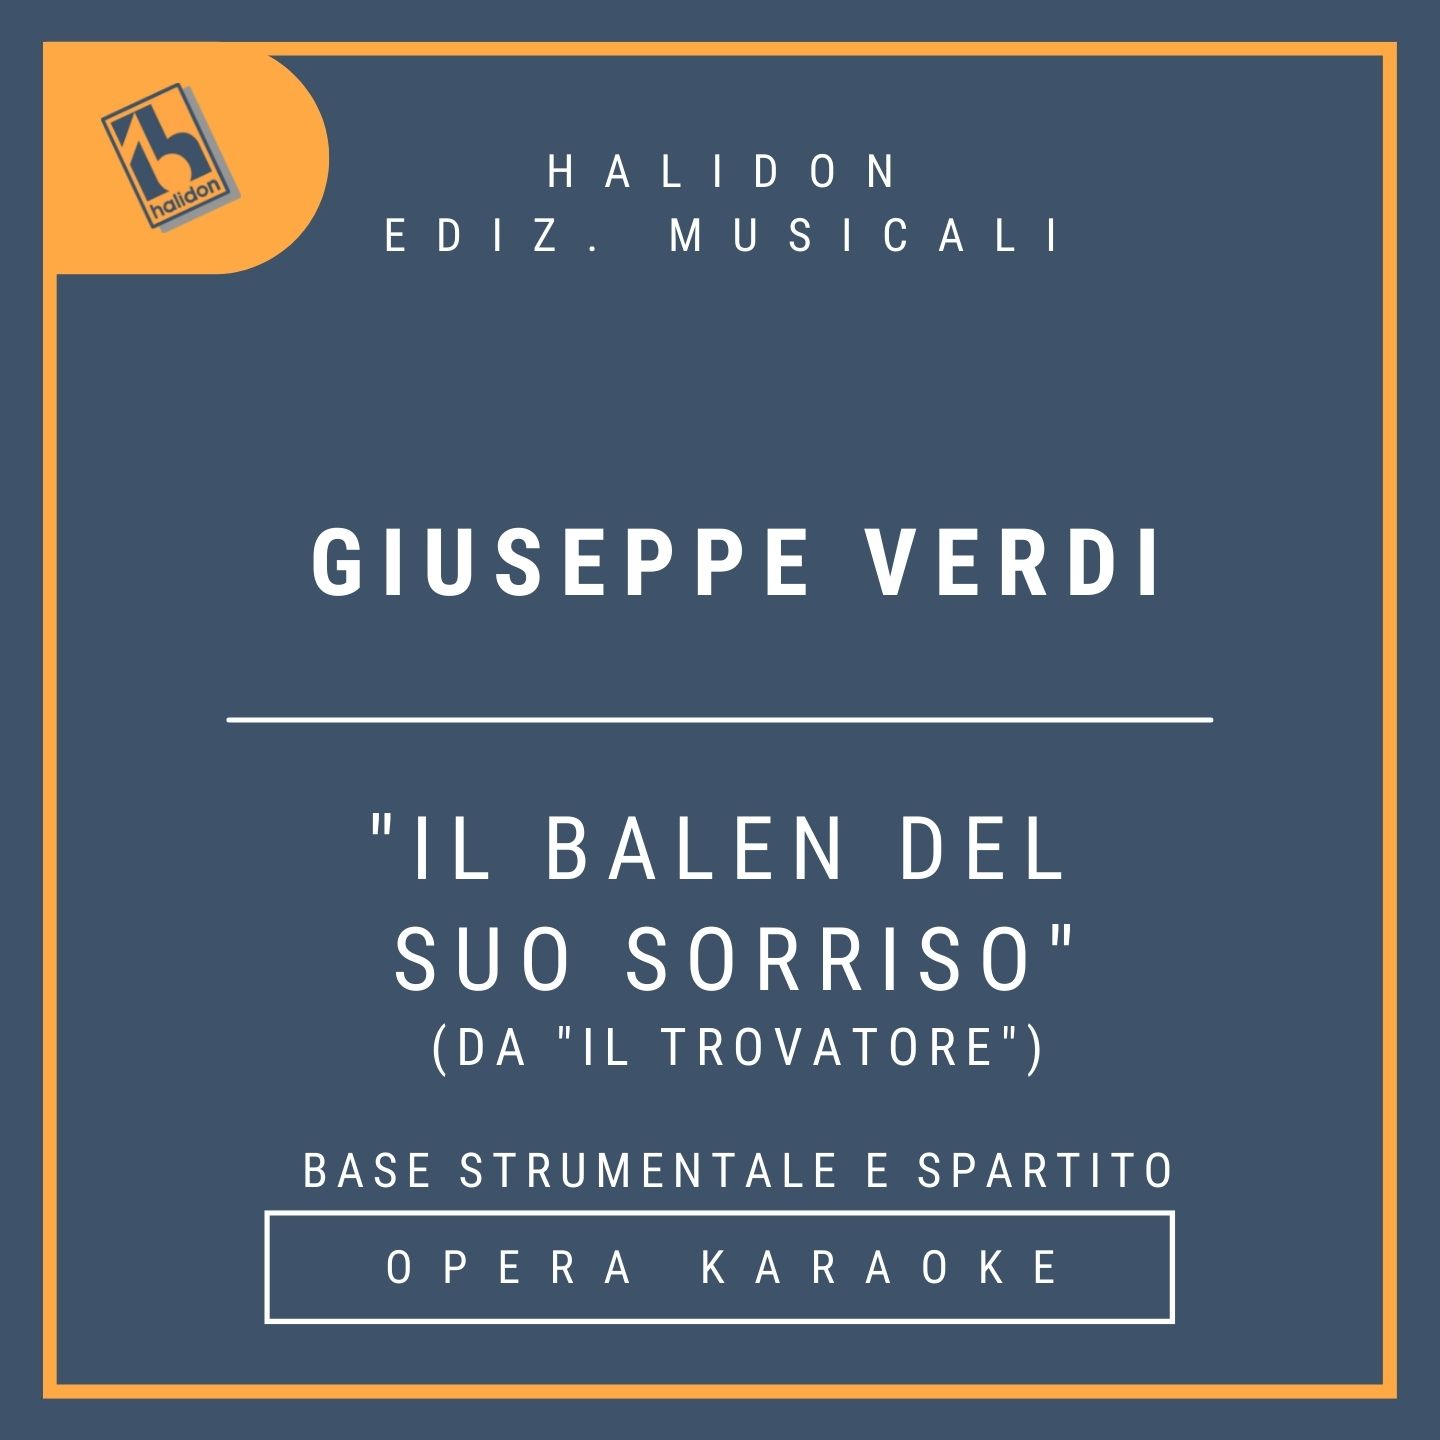 Giuseppe Verdi - Il balen del suo sorriso (da 'Il trovatore') - Aria del Conte di Luna (baritono) - Base strumentale + spartito